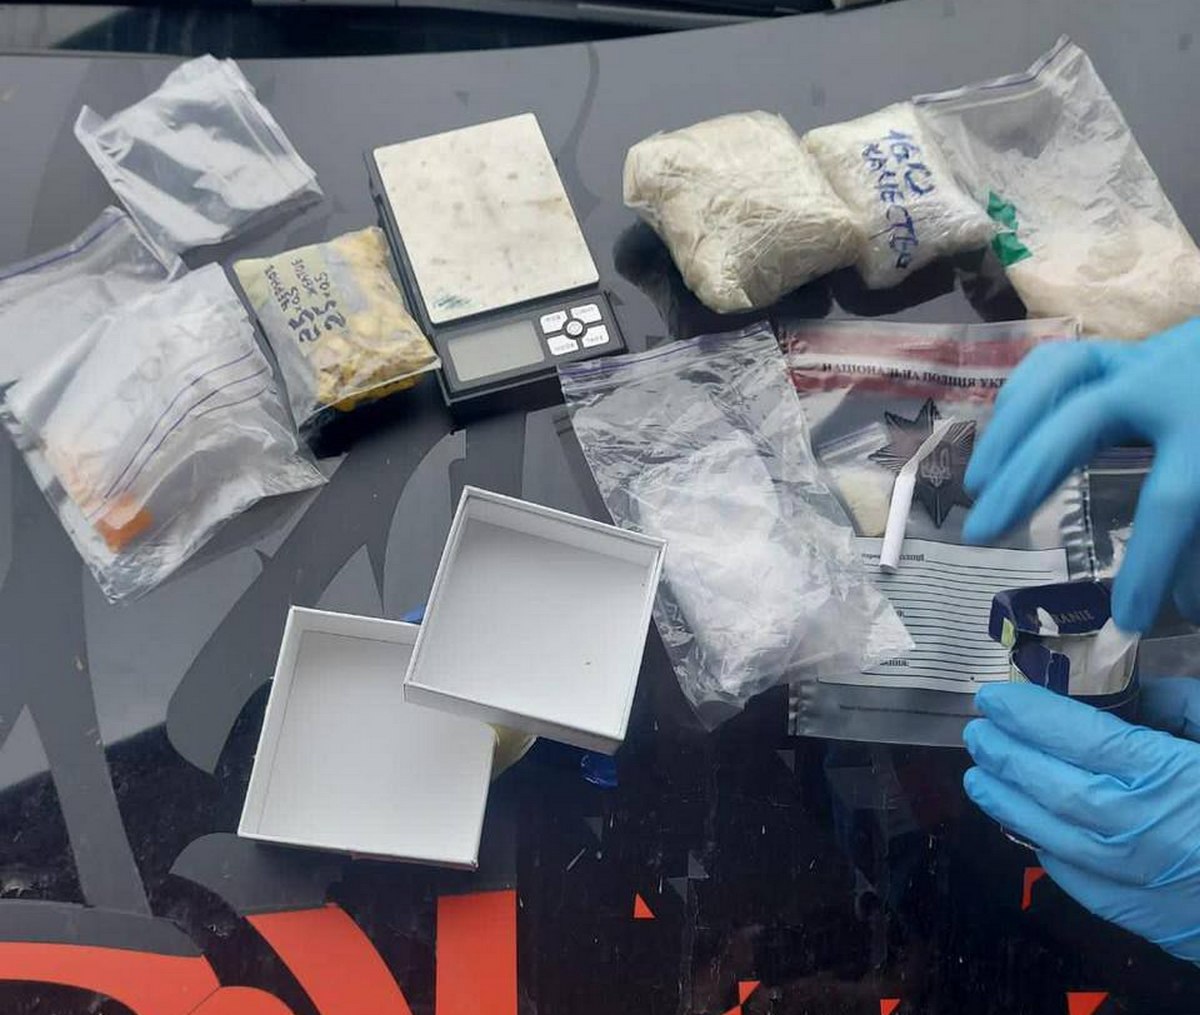 Поліцейські вилучили сліп-пакет із 50 згортками з психотропною речовиною «АЛЬФА-PVP», пакет з психотропною речовиною «АЛЬФА-PVP» вагою близько кілограма та метамфетамін